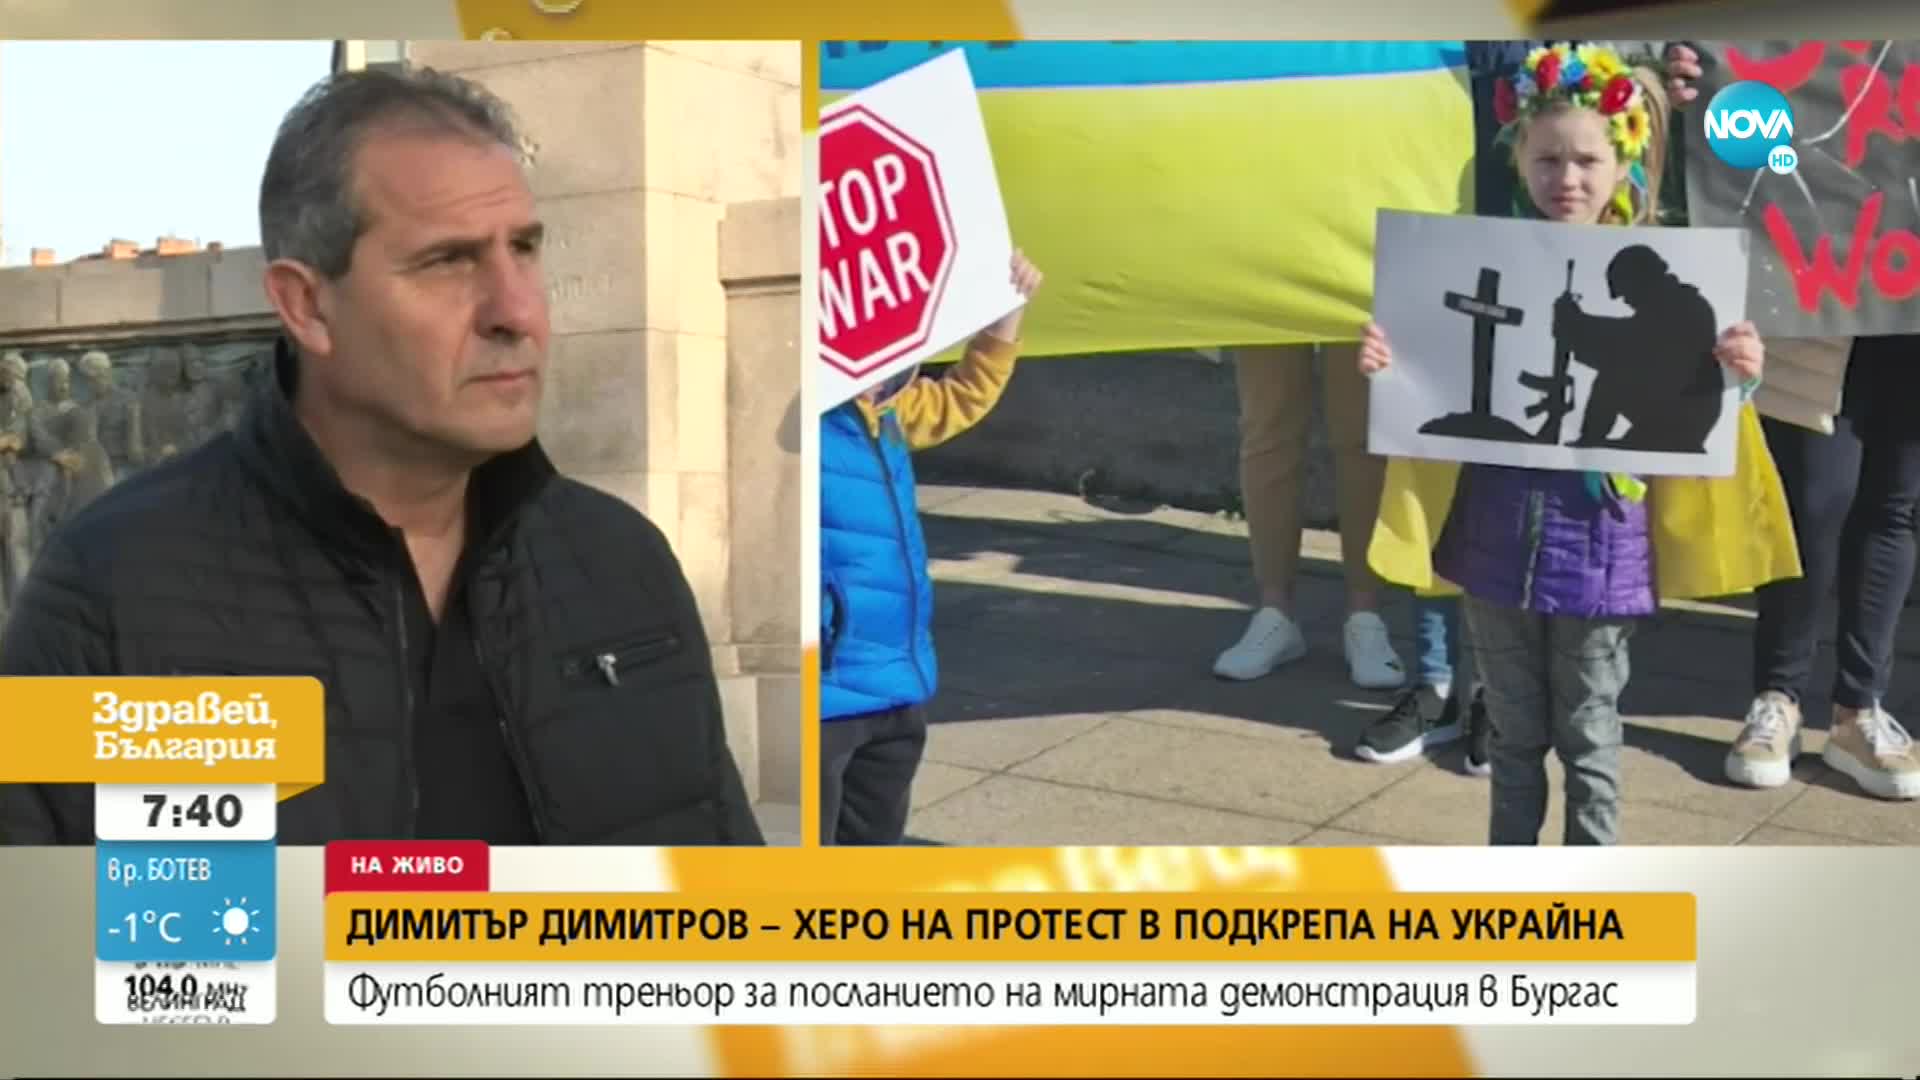 Димитър Димитров-Херо: Длъжни сме да подкрепим украинския народ